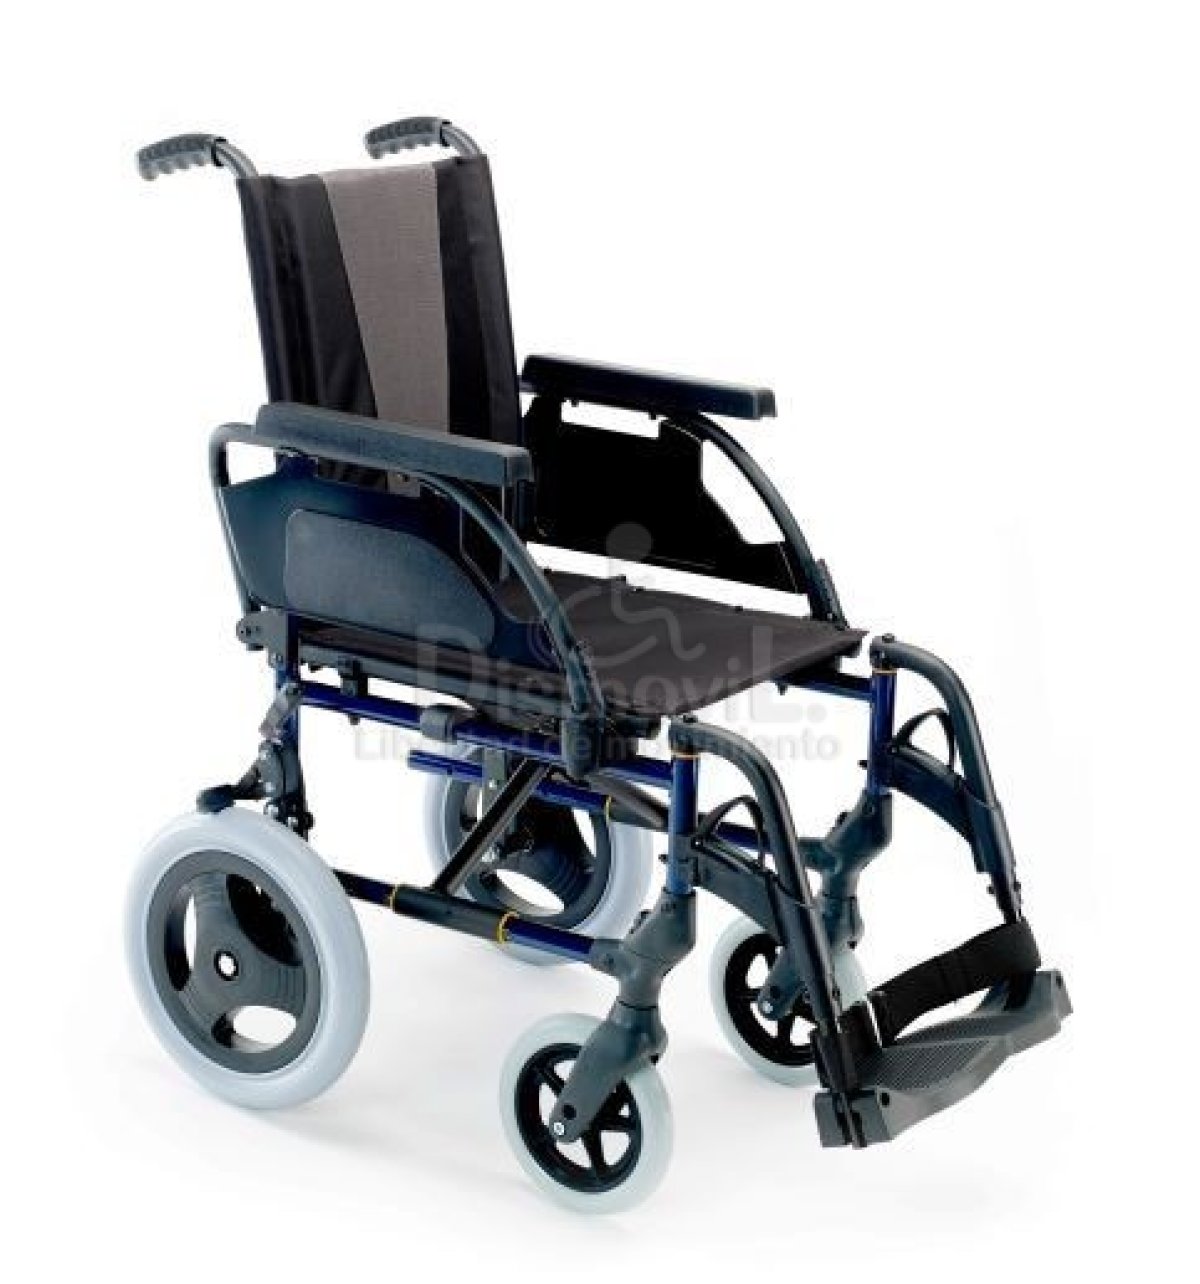 Коляски инвалидные прогулочные цена. Инвалидная коляска Breezy Premium ly 250. Breezy 300 инвалидная коляска. Breezy Premium ly-250 (250-PR/49), ширина сиденья 49 см. Кресло-коляска инвалидная складная ly-250 (250-031a),.